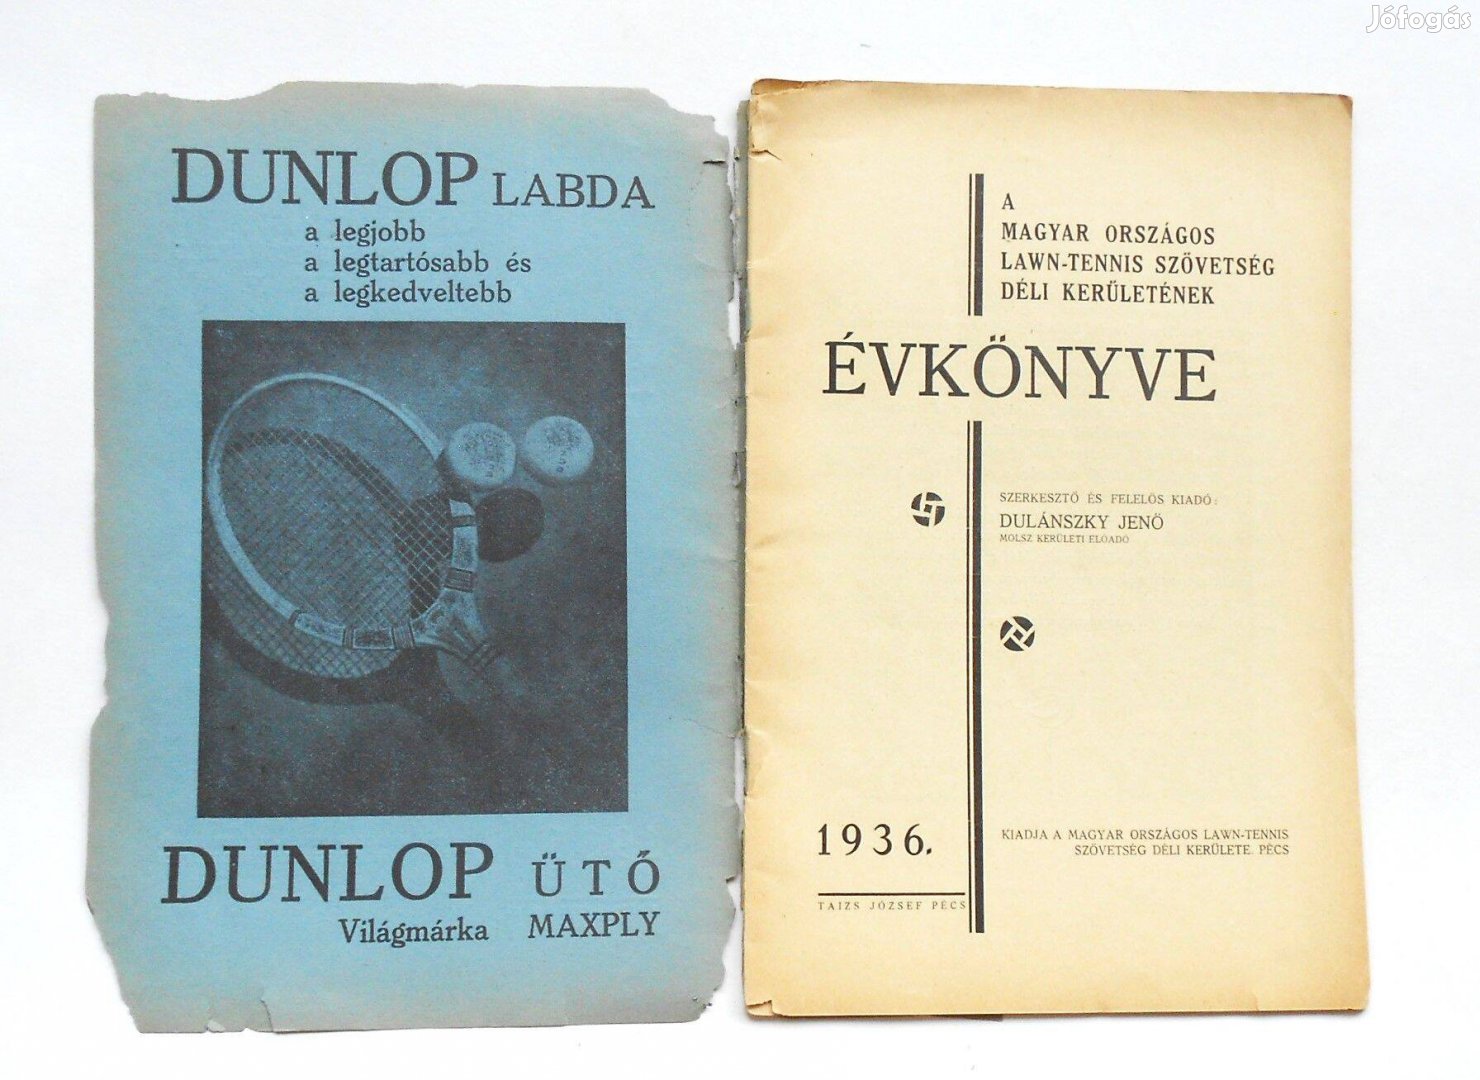 Magyar Országos Tenisz Szövetség déli kerületének 1936 évkönyve